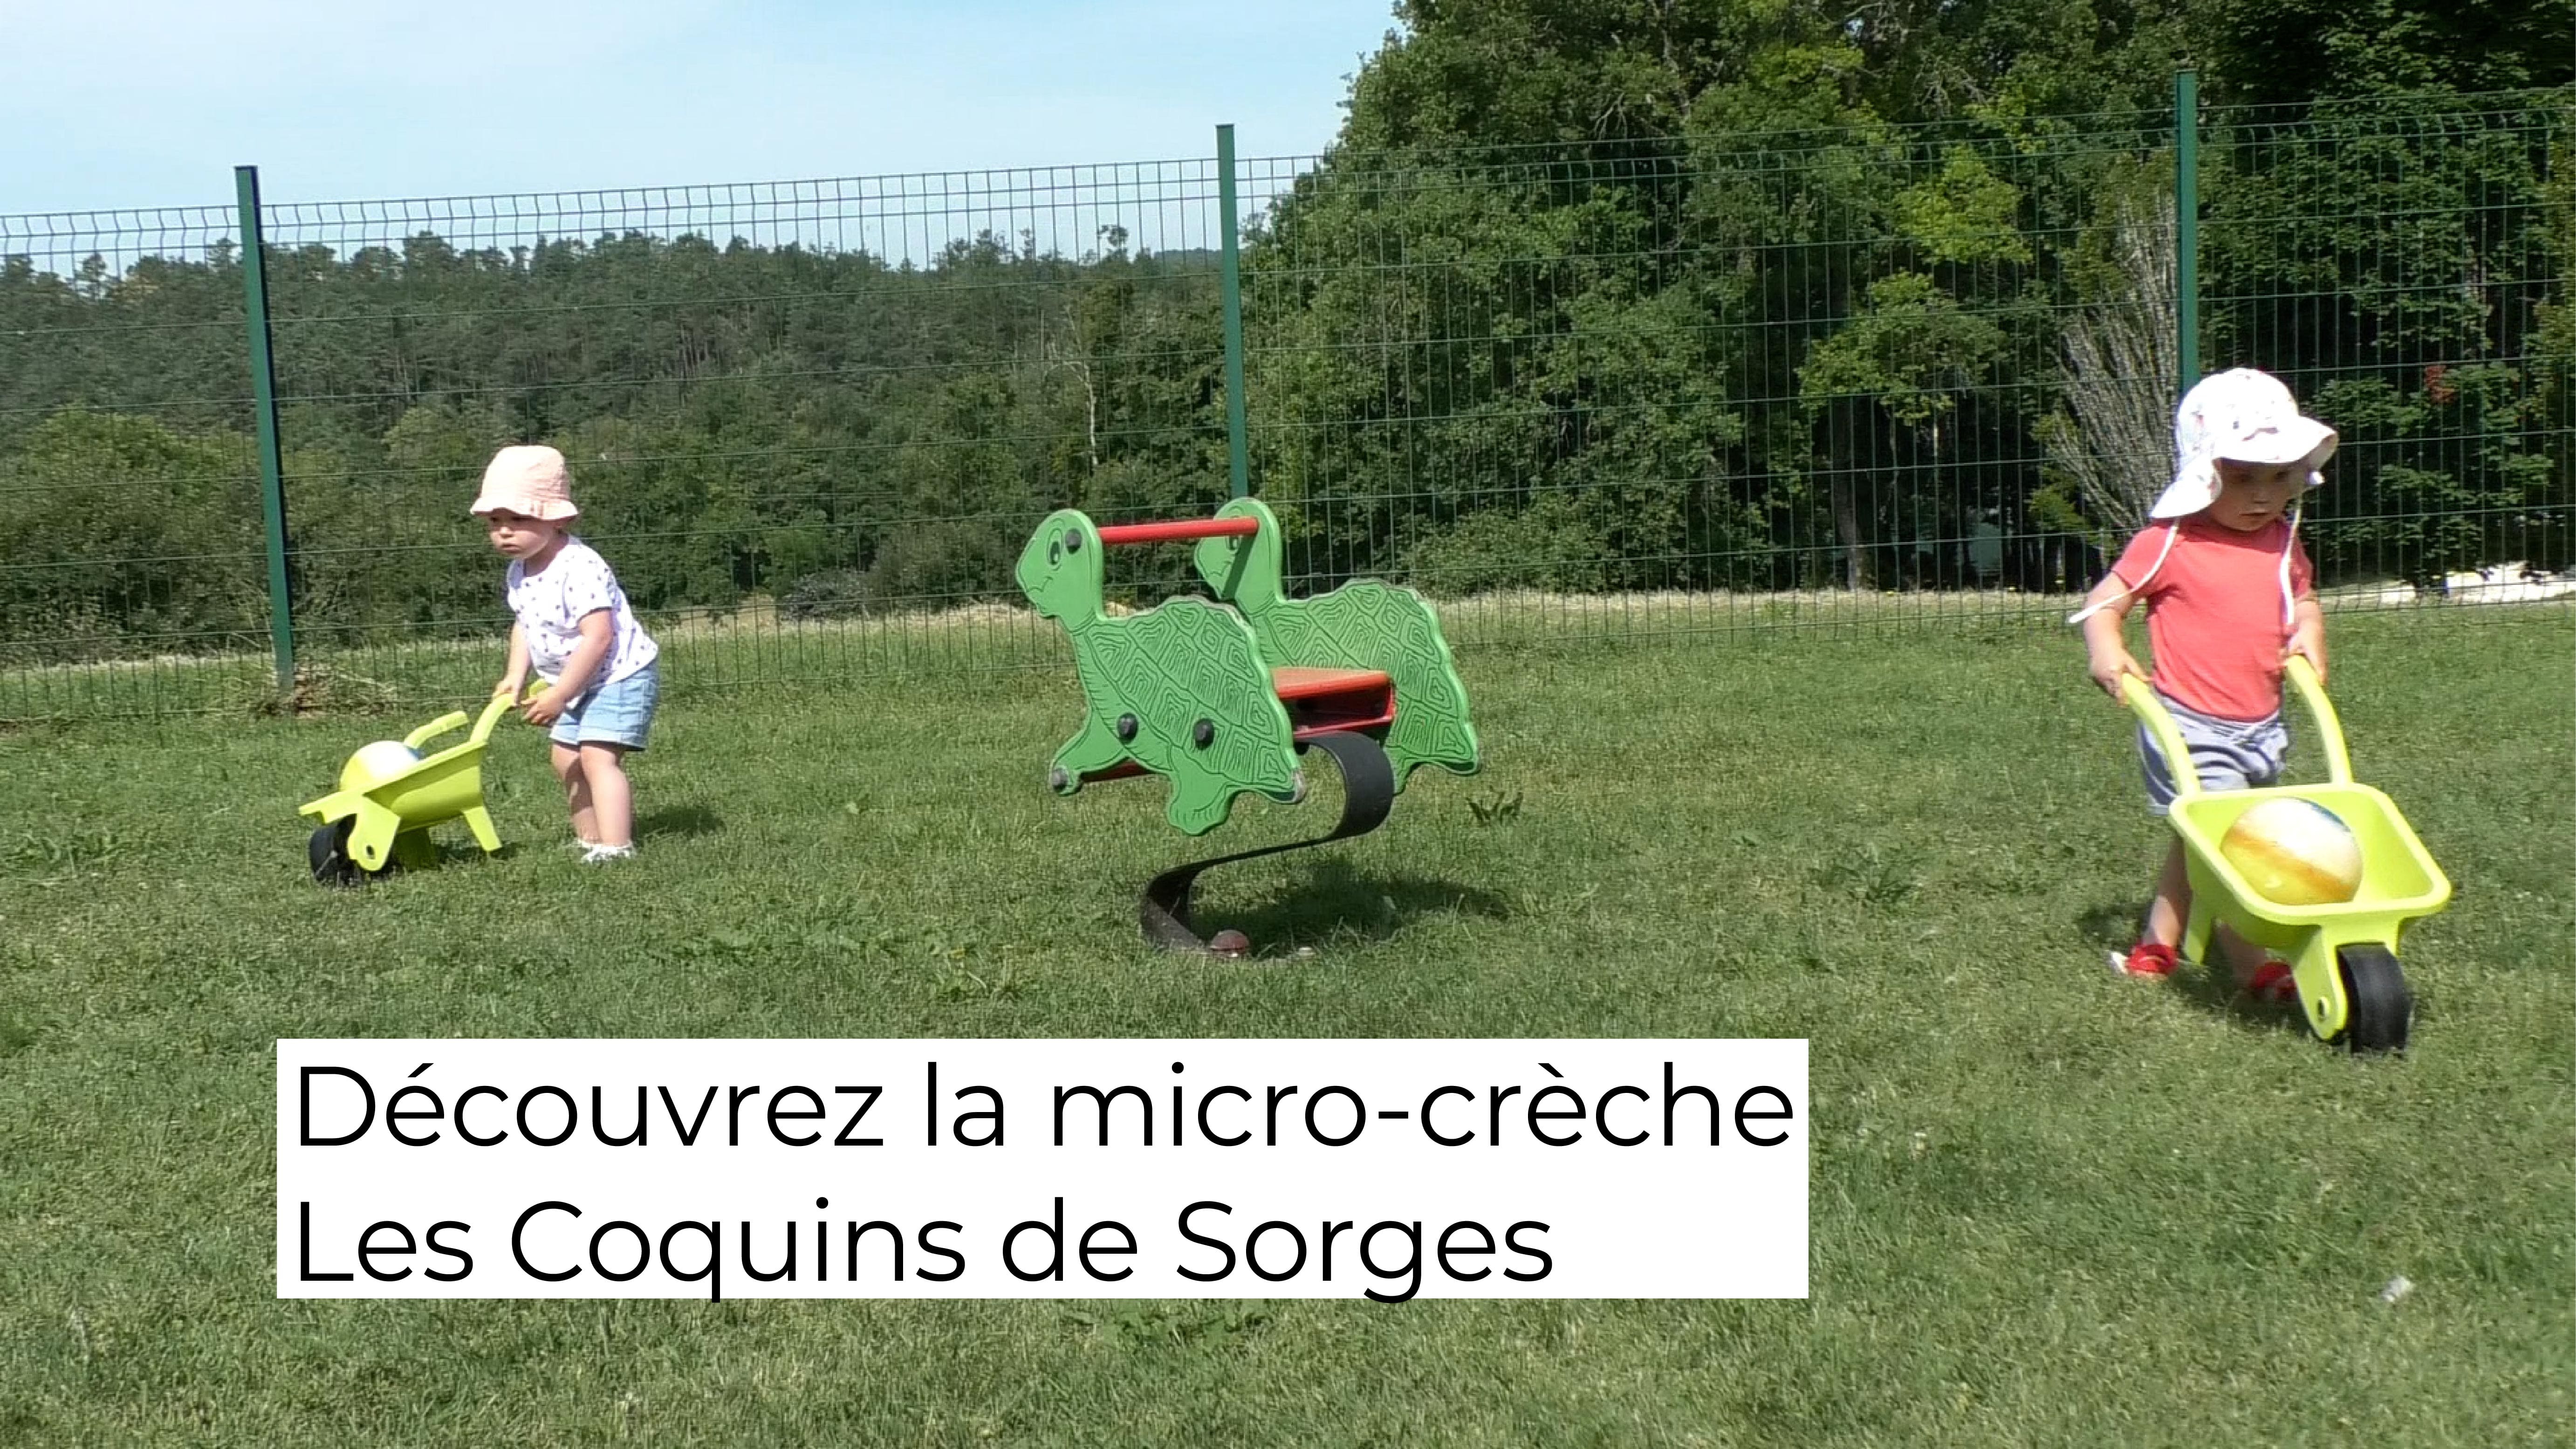 Découvrez la micro crèche "Les Coquins de Sorges" à Sorges et Ligueux en Périgord !